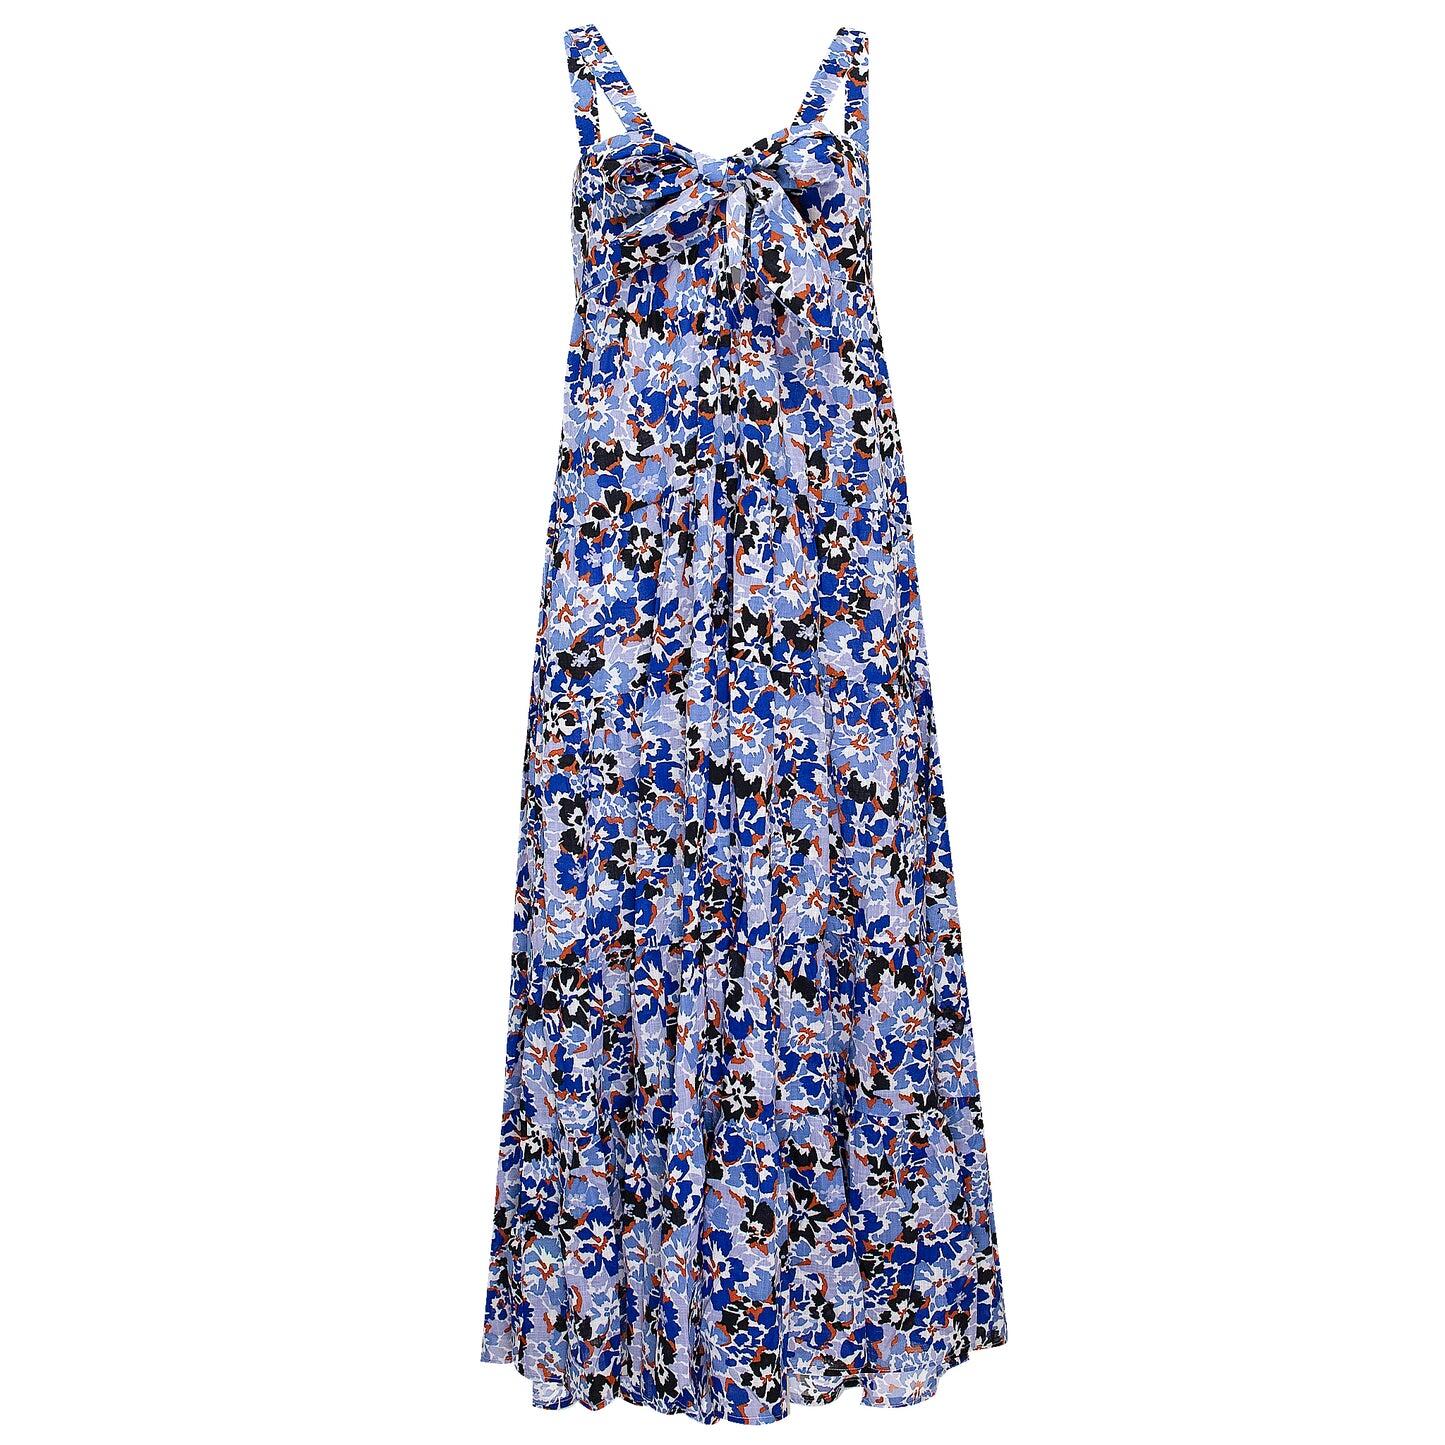 Thrift Shop Tiered Dress Mediterranean Blue